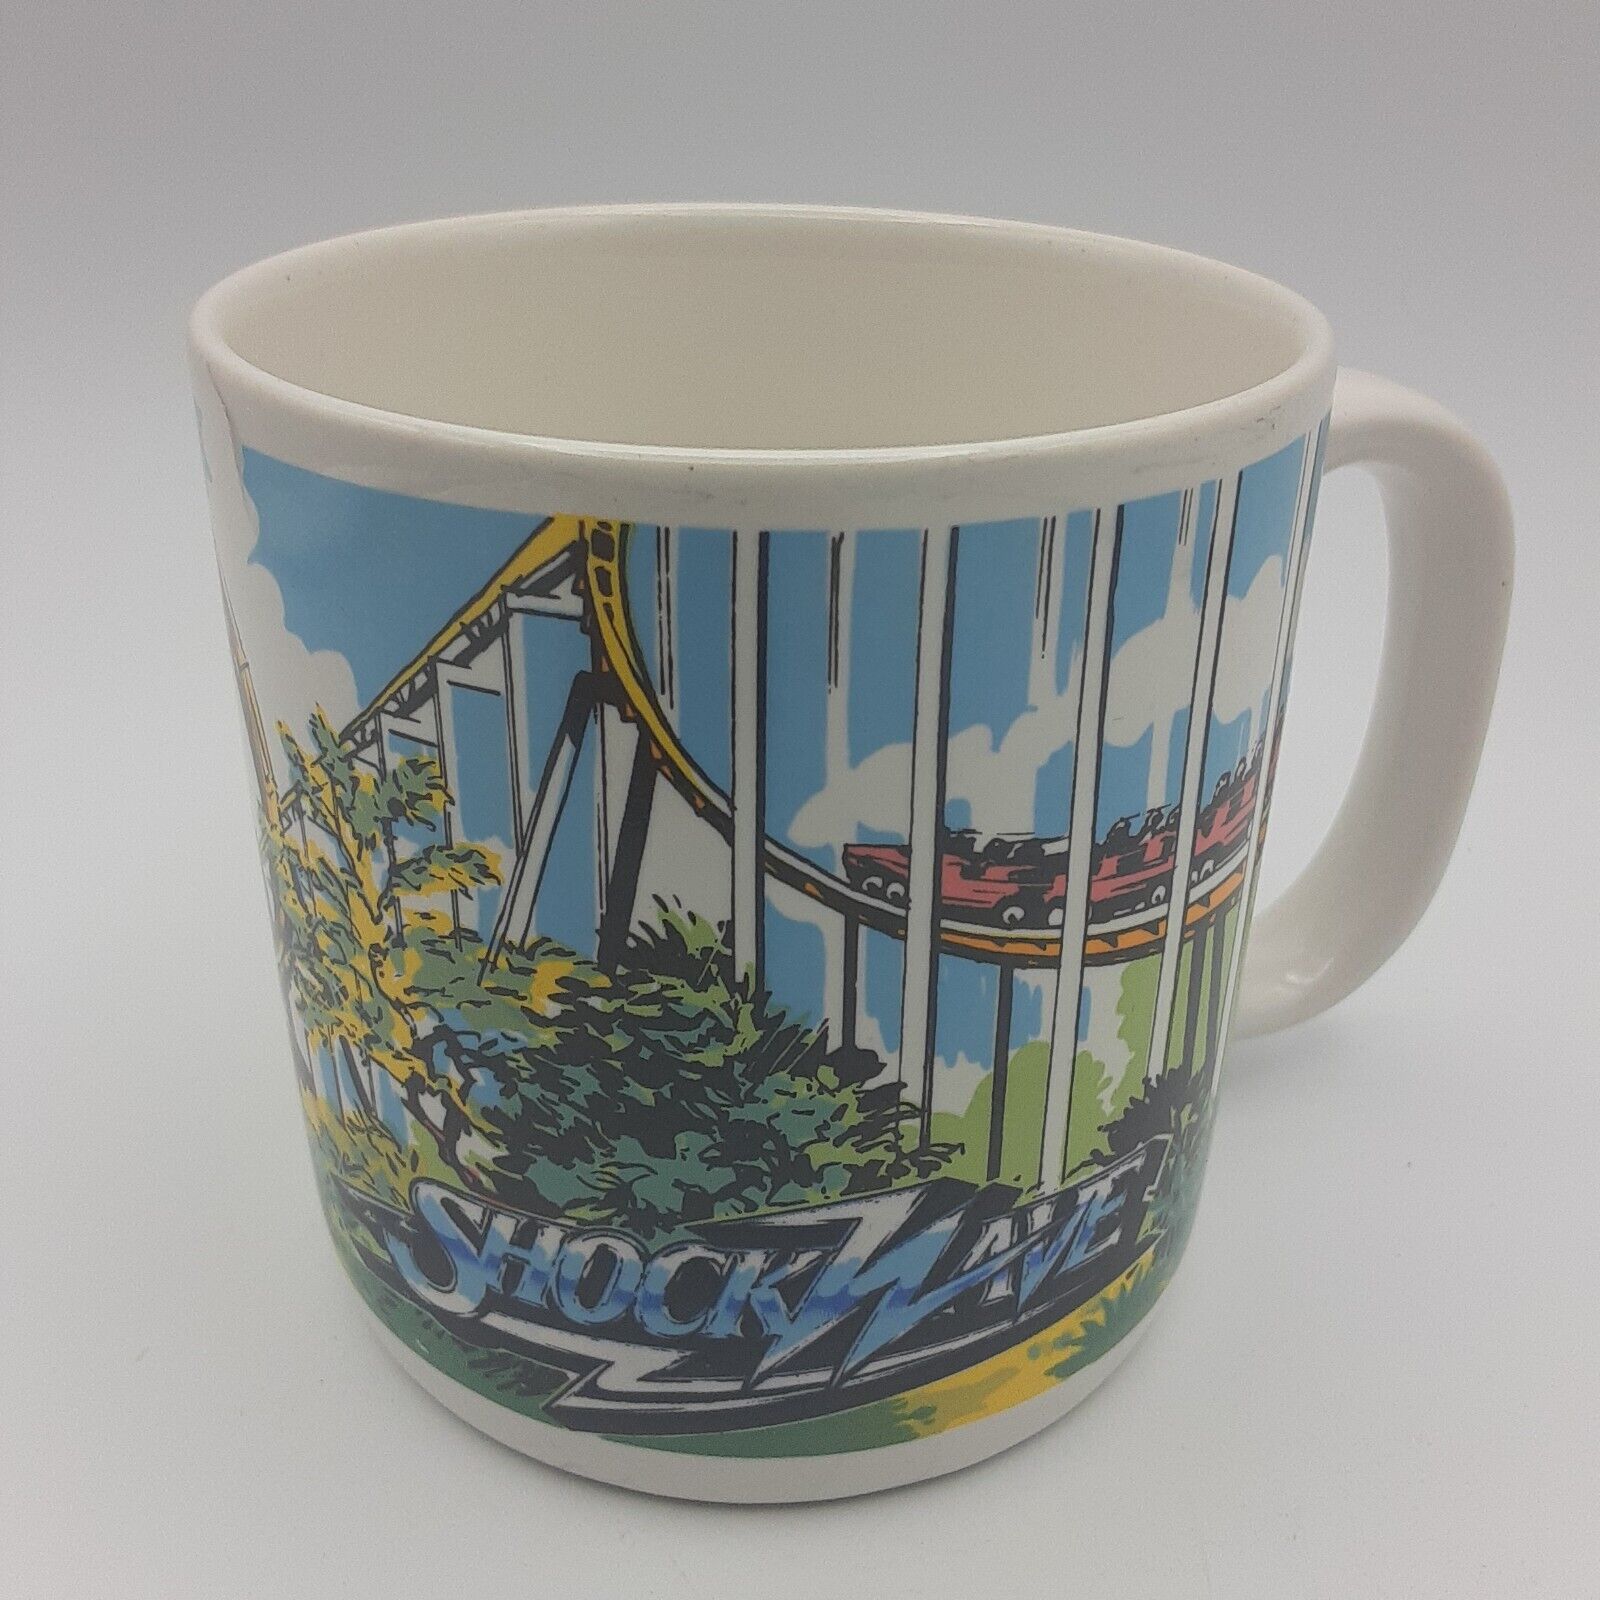 Vintage Shockwave Roller Coaster Coffee Mug Great America Six Flags